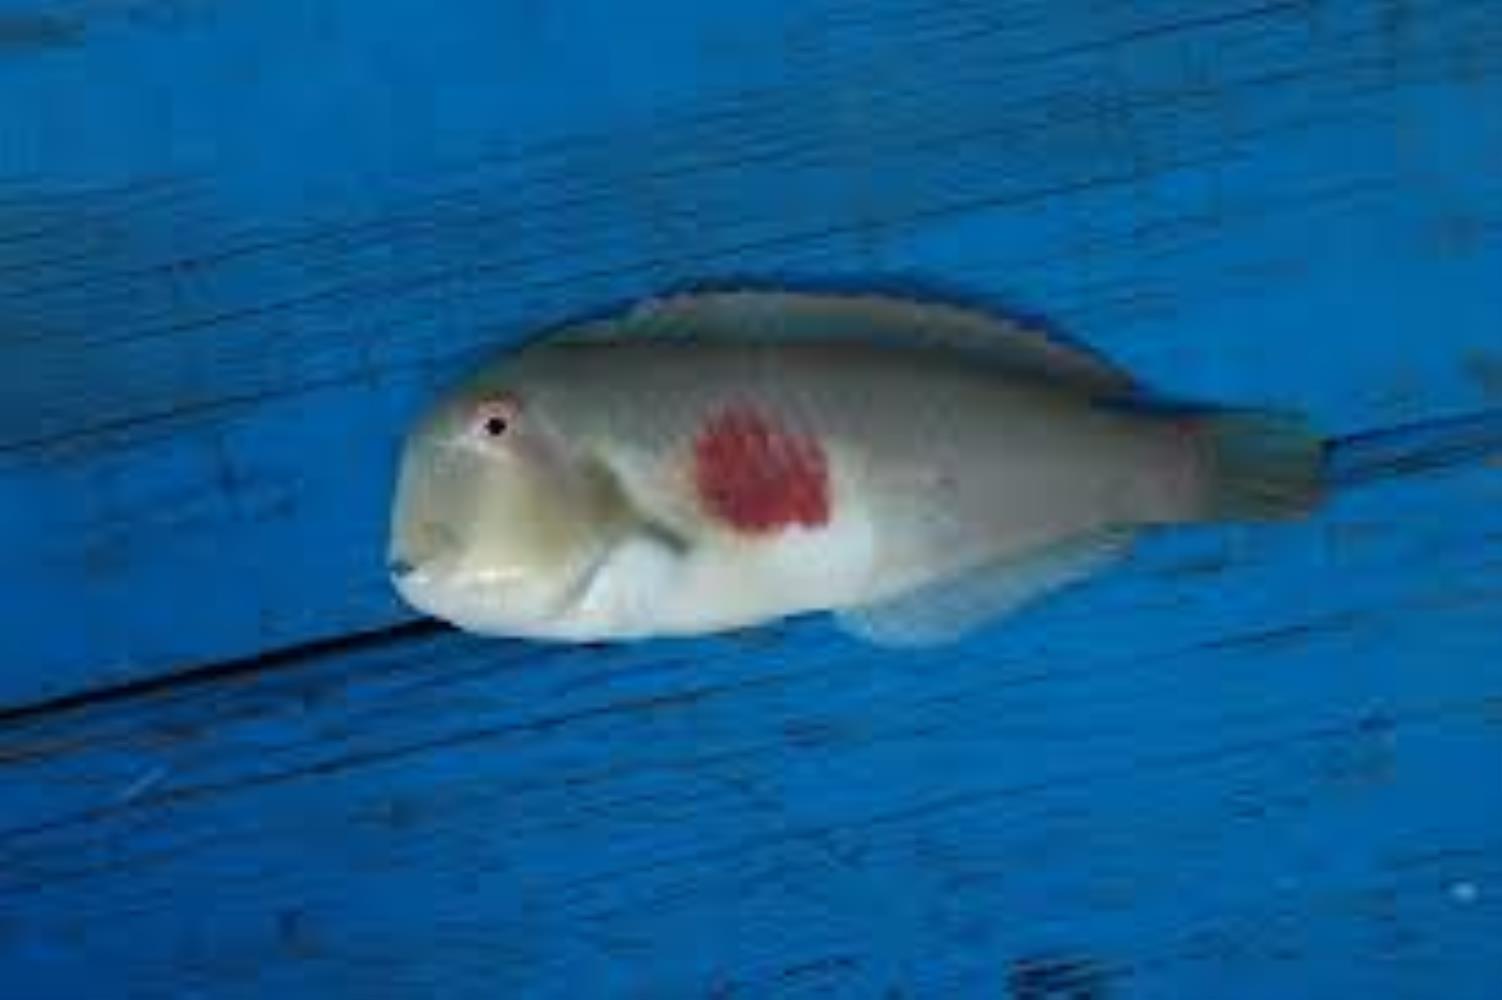 Redblotch Razorfish